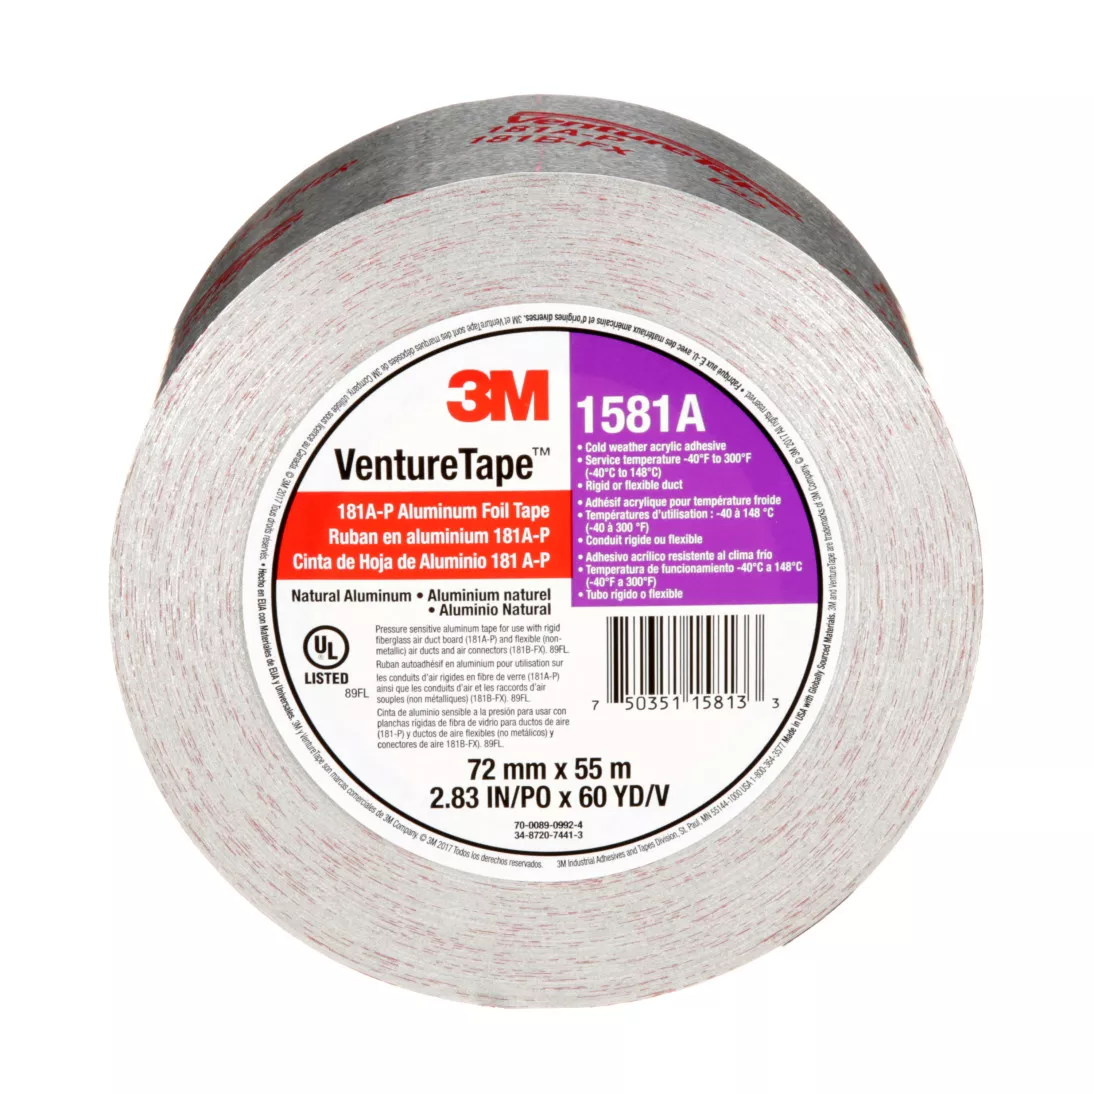 3M™ Venture Tape™ UL181A-P Aluminum Foil Tape 1581A, Silver, 72 mm x 55
m, 2 mil, 16 rolls per case